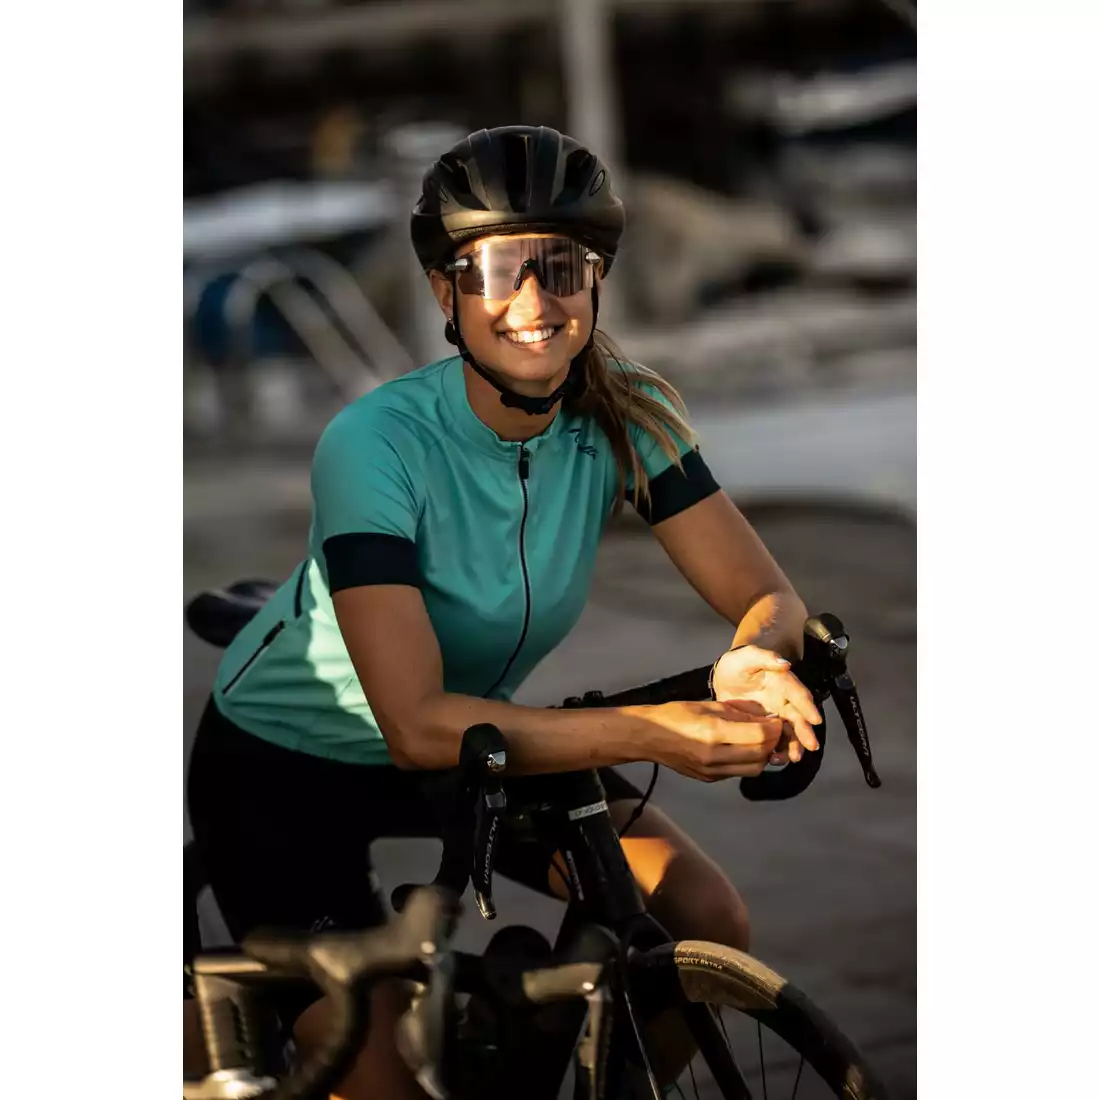 Rogelli MODESTA tricou de ciclism pentru femei, turcoaz-negru